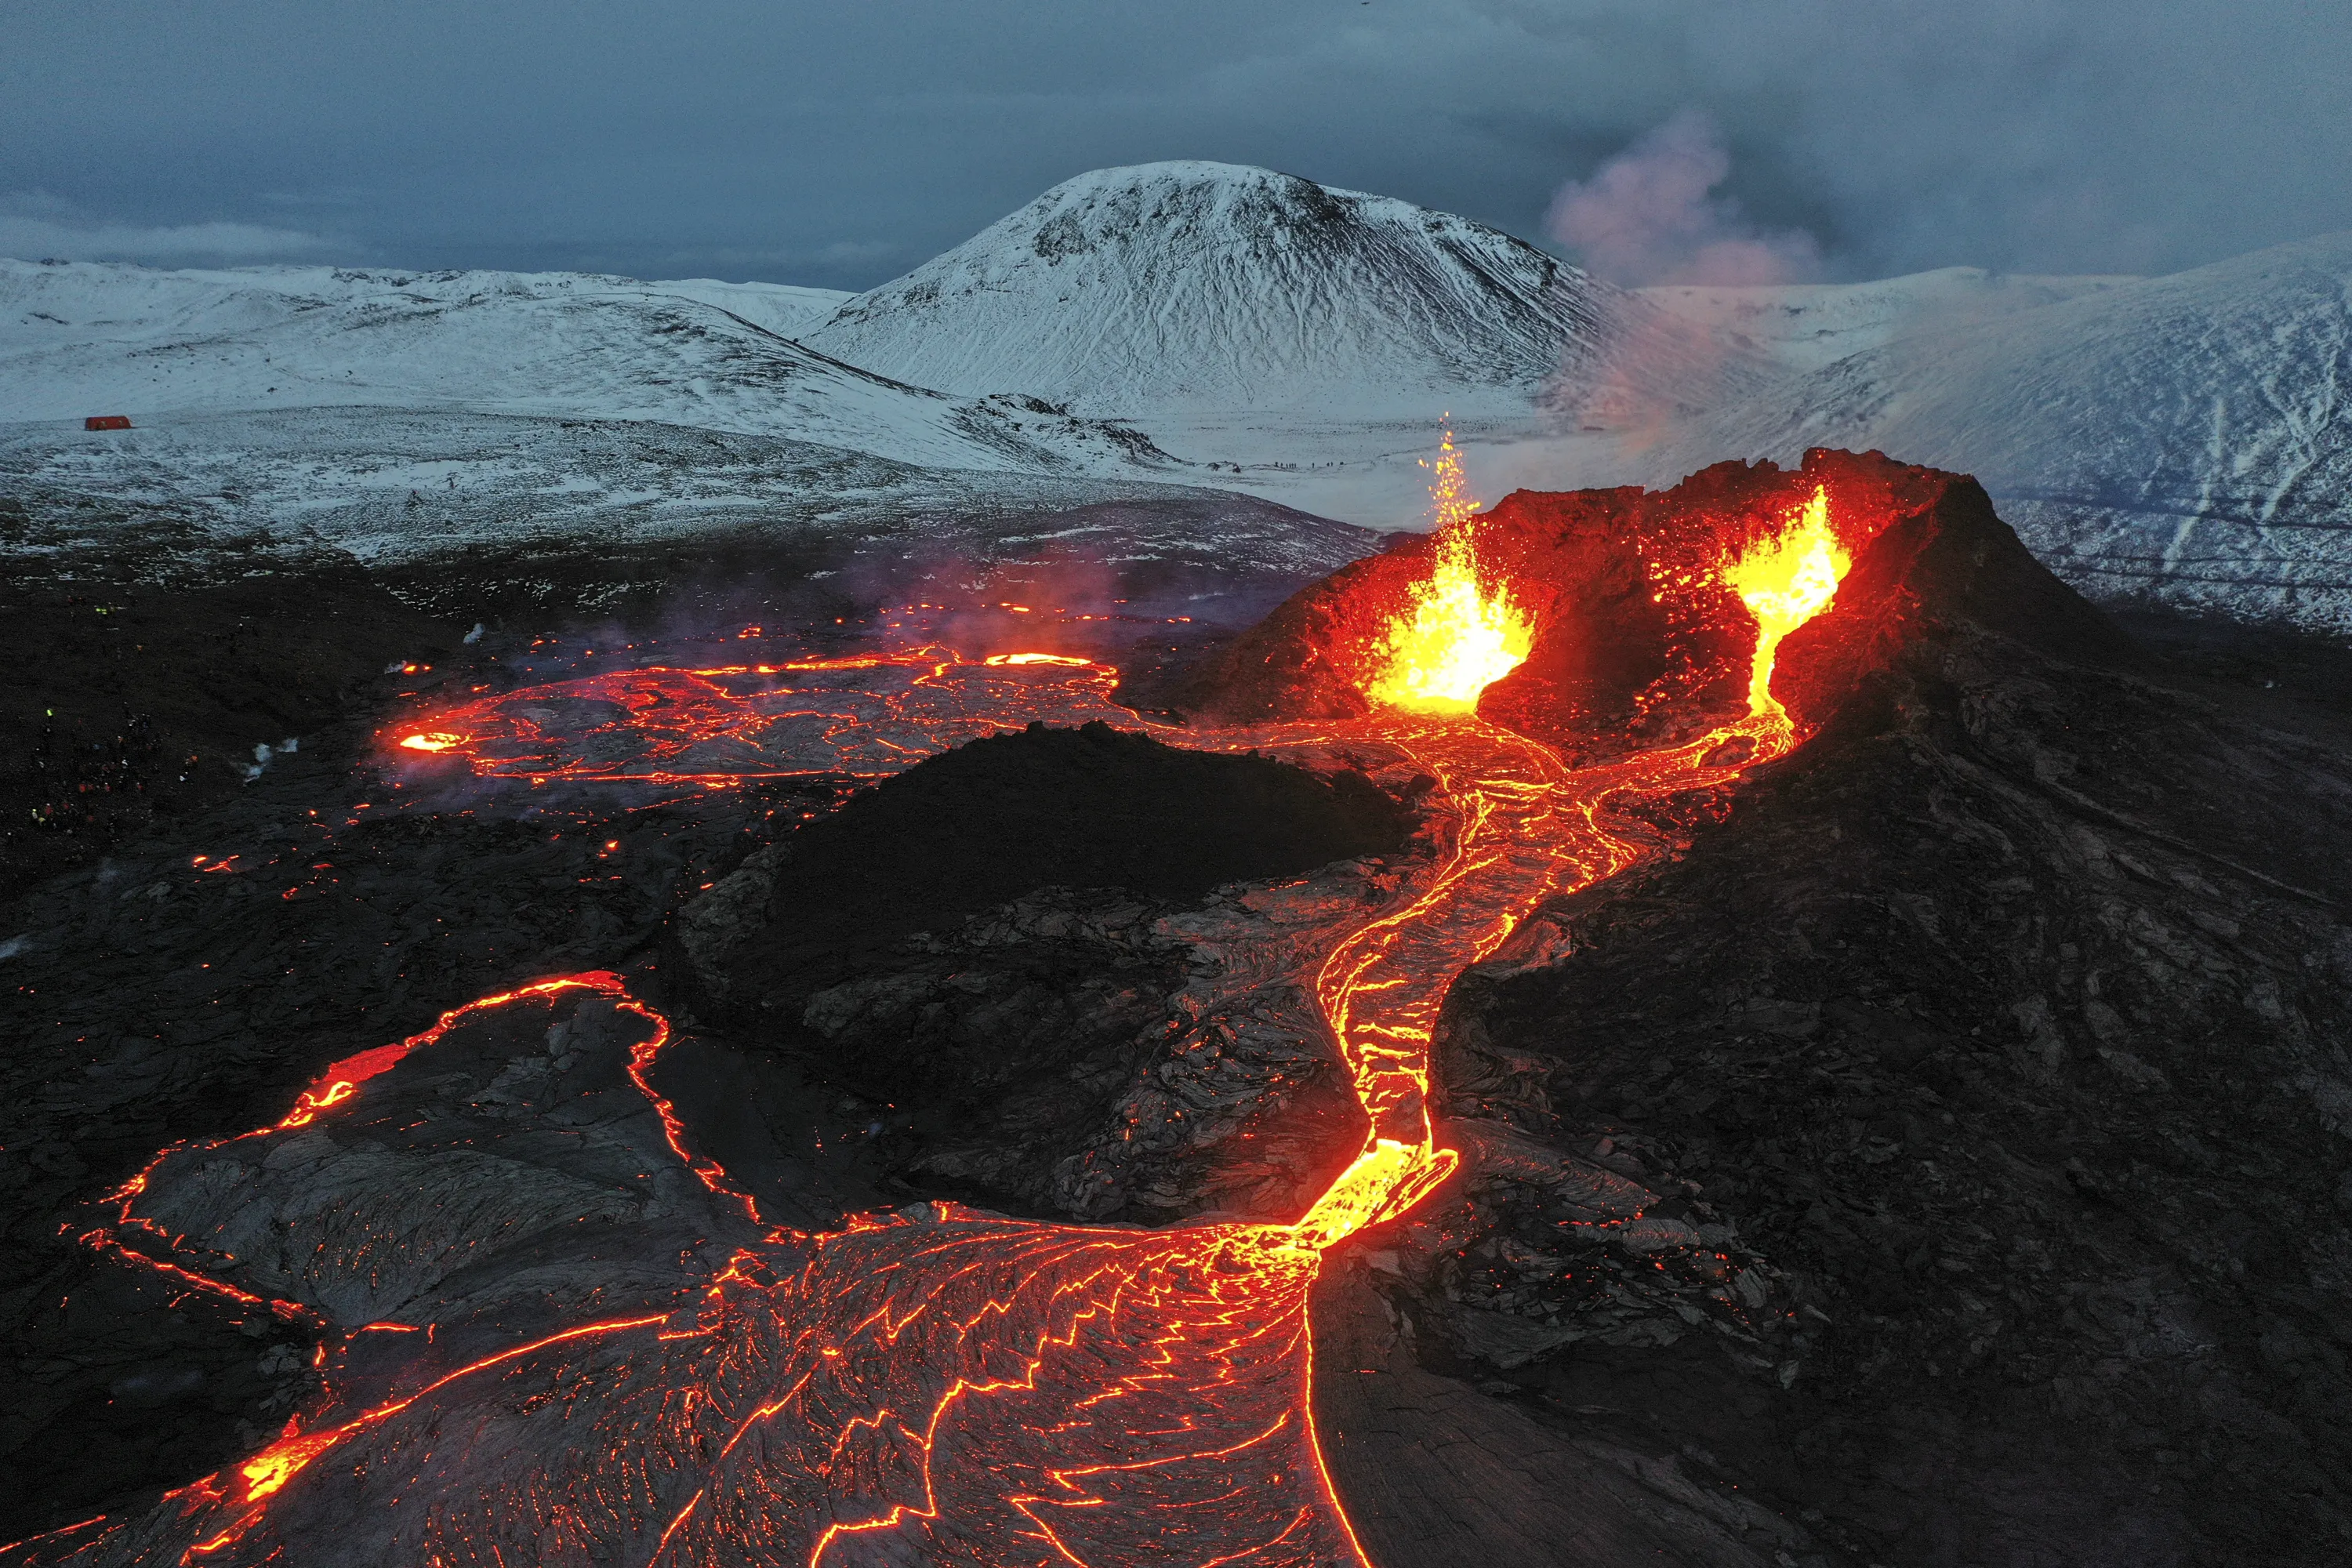 Сильные землетрясения вулканы гейзеры наблюдаются. Извержение вулкана эйяфьядлайёкюдль 2010. Вулкан в Исландии Эйяфьятлайокудль. Извержение вулкана в Исландии 2010. Вулкан Исландии Эйяфьятлайокудль 2010.